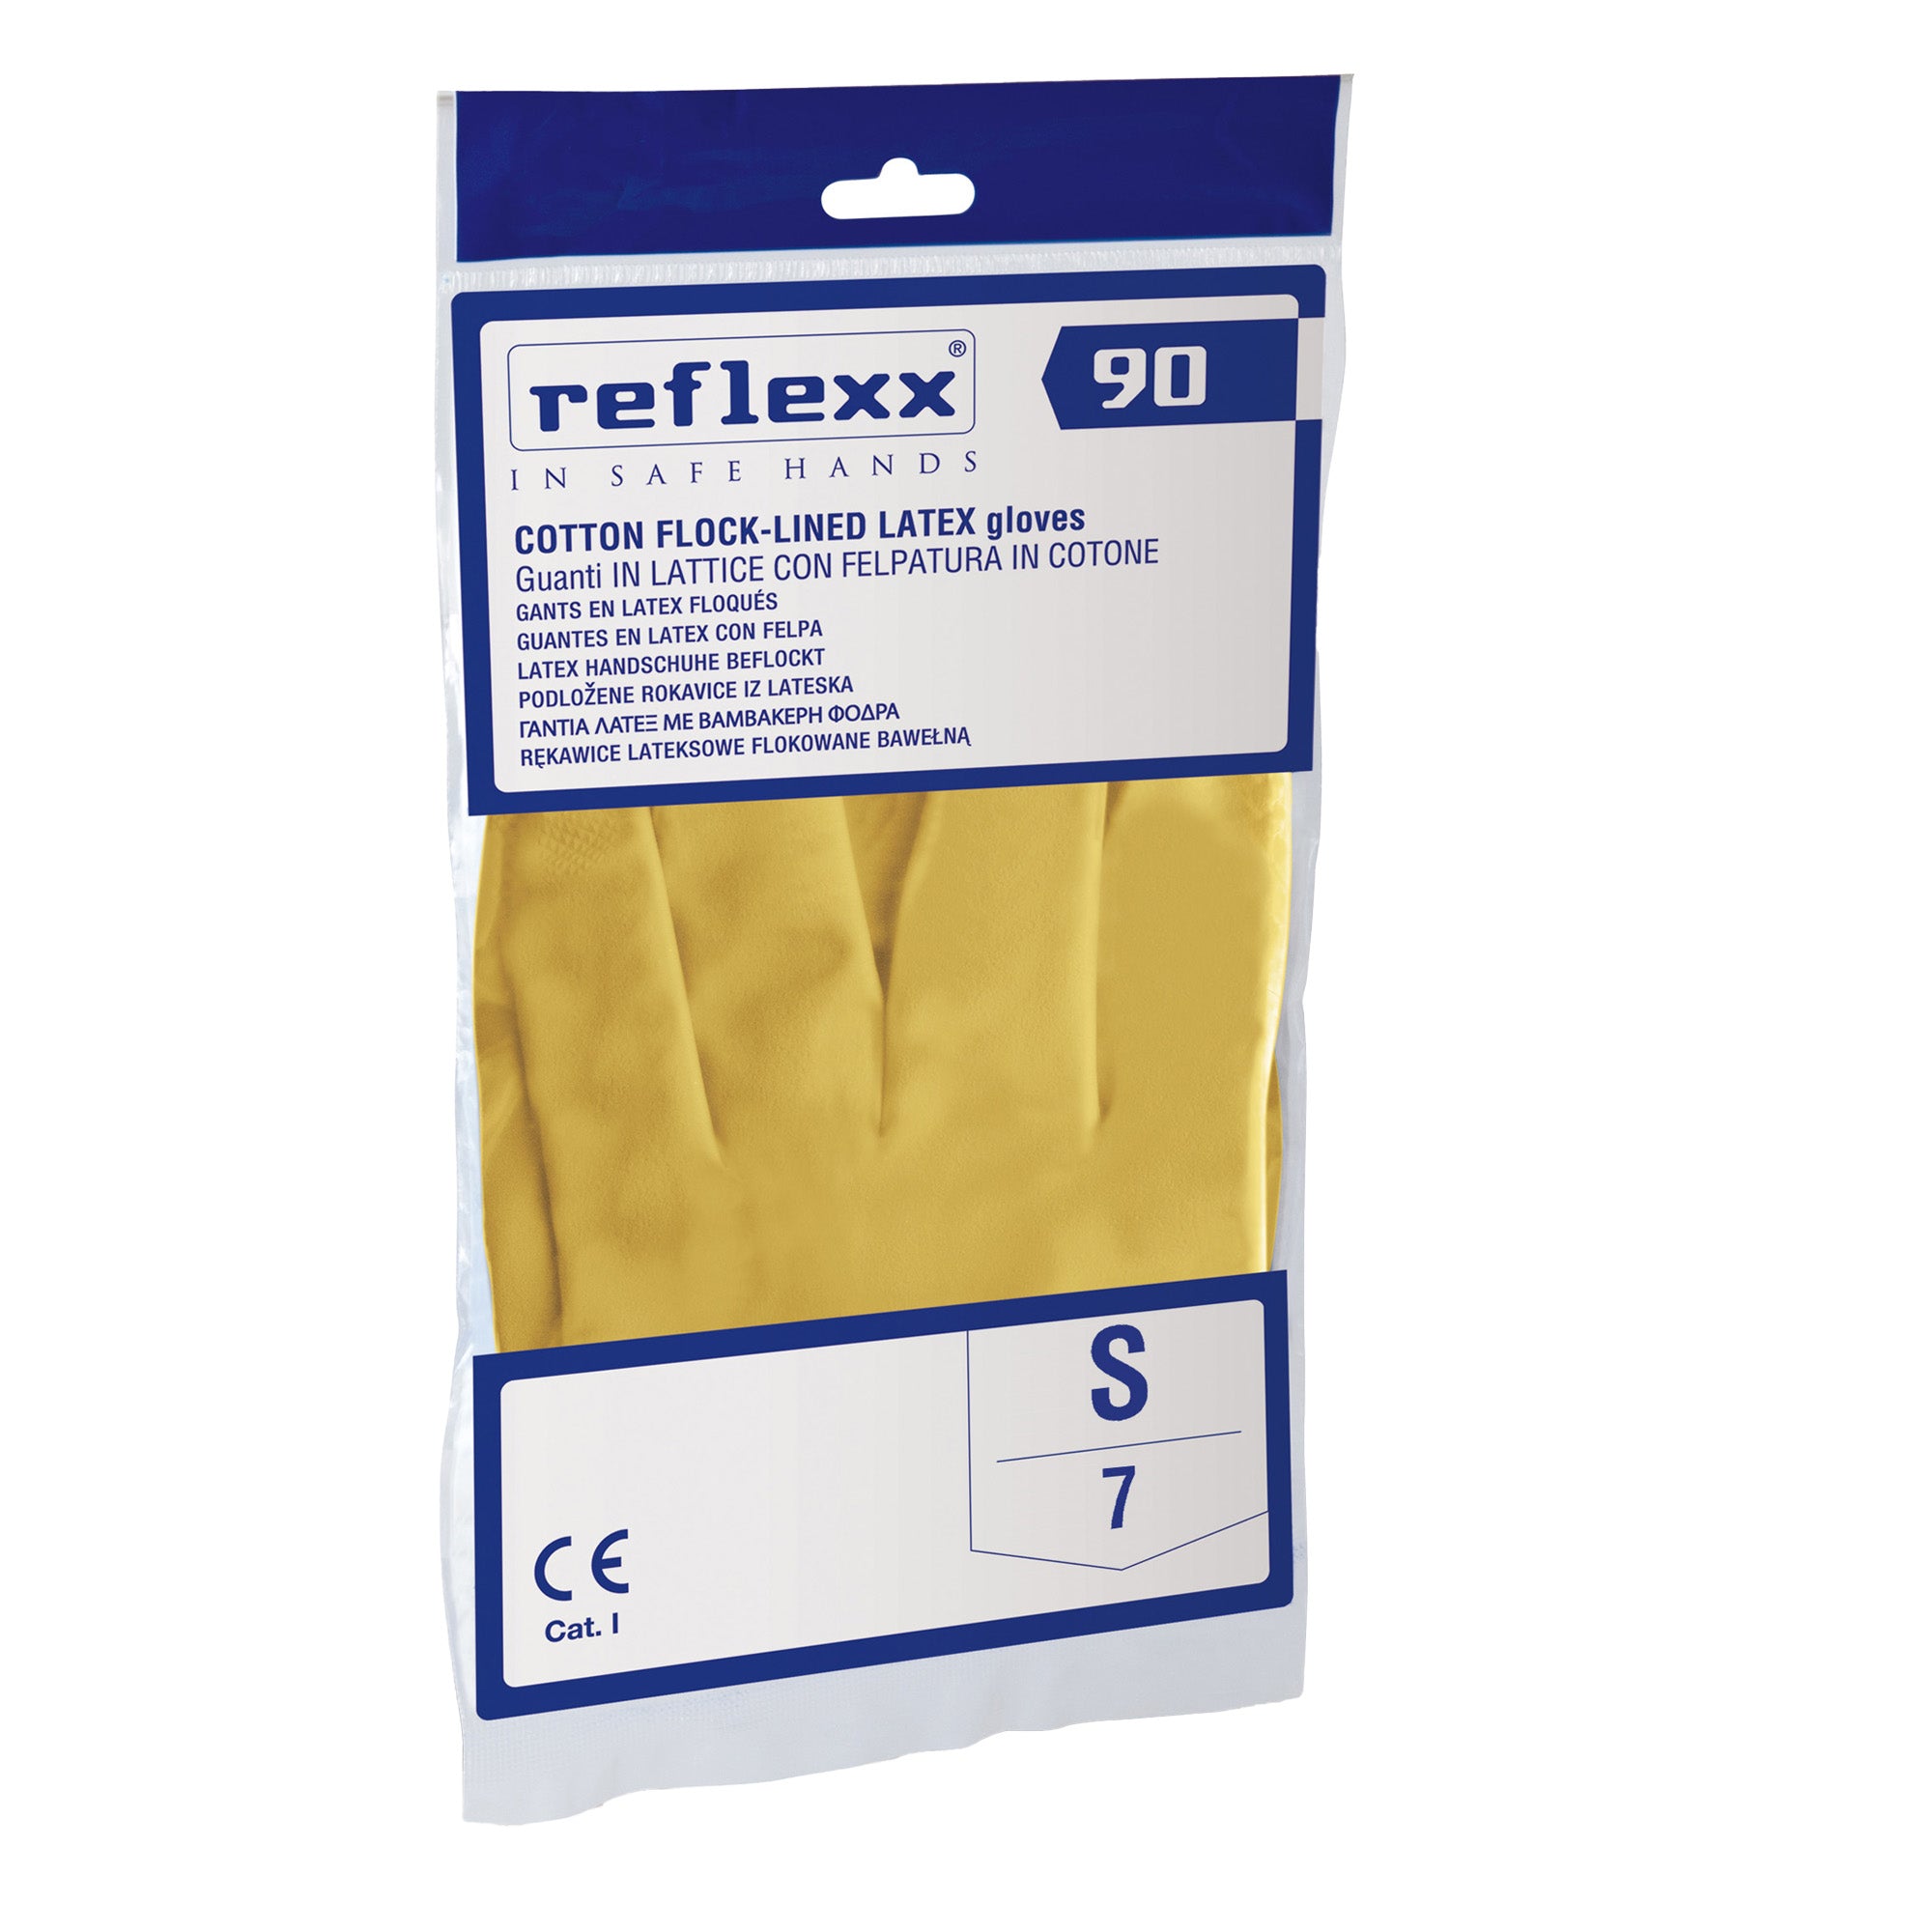 reflexx-coppia-guanti-lattice-felpato-r90-tg-s-giallo